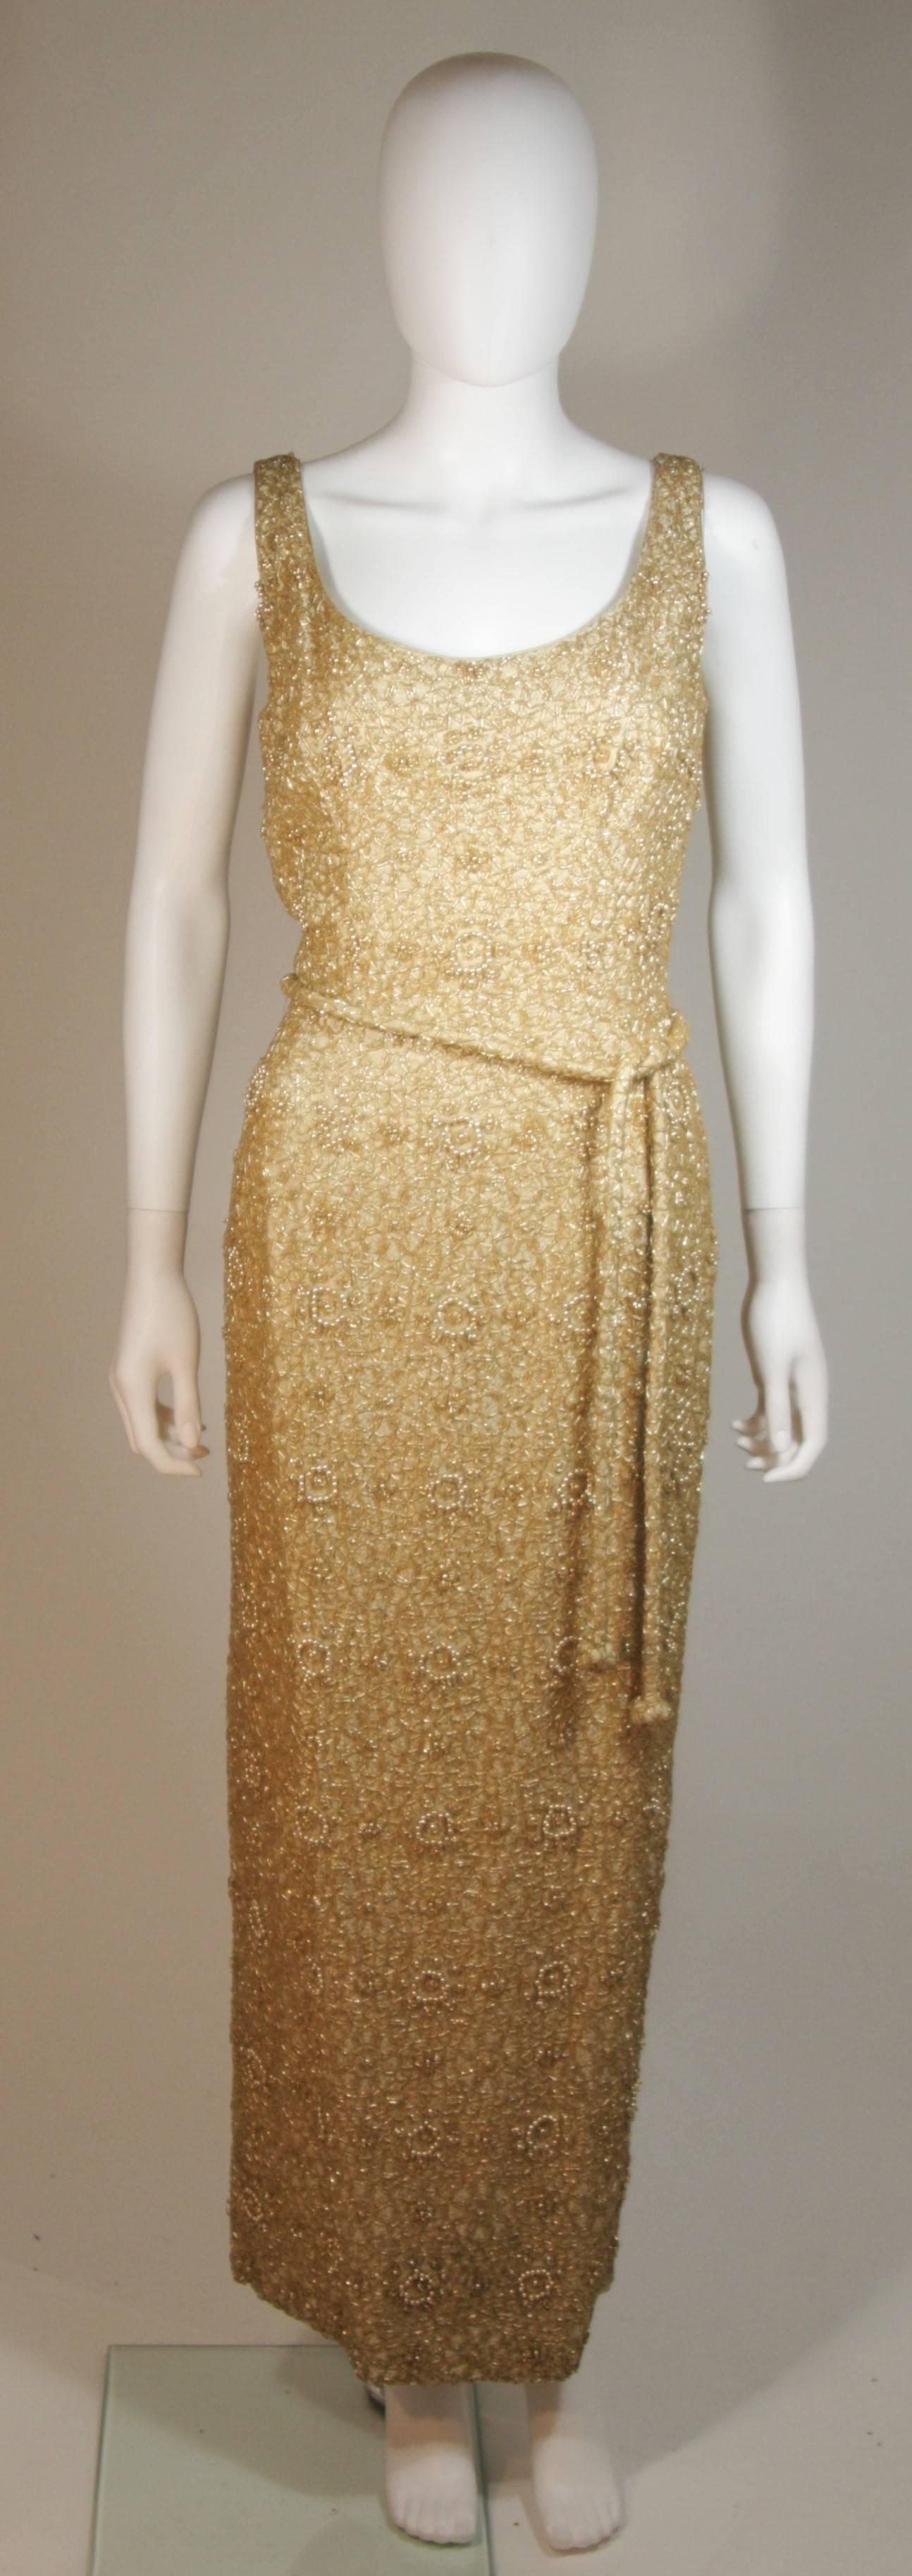 Diese Haute Couture Int'l  Das Kleid besteht aus einer stark perlenbesetzten Seide in Gold. Das Kleid hat einen klassischen Stil mit Reißverschluss und Gürtel. In ausgezeichnetem Vintage-Zustand. Hergestellt in Hongkong.

  **Bitte vergleichen Sie